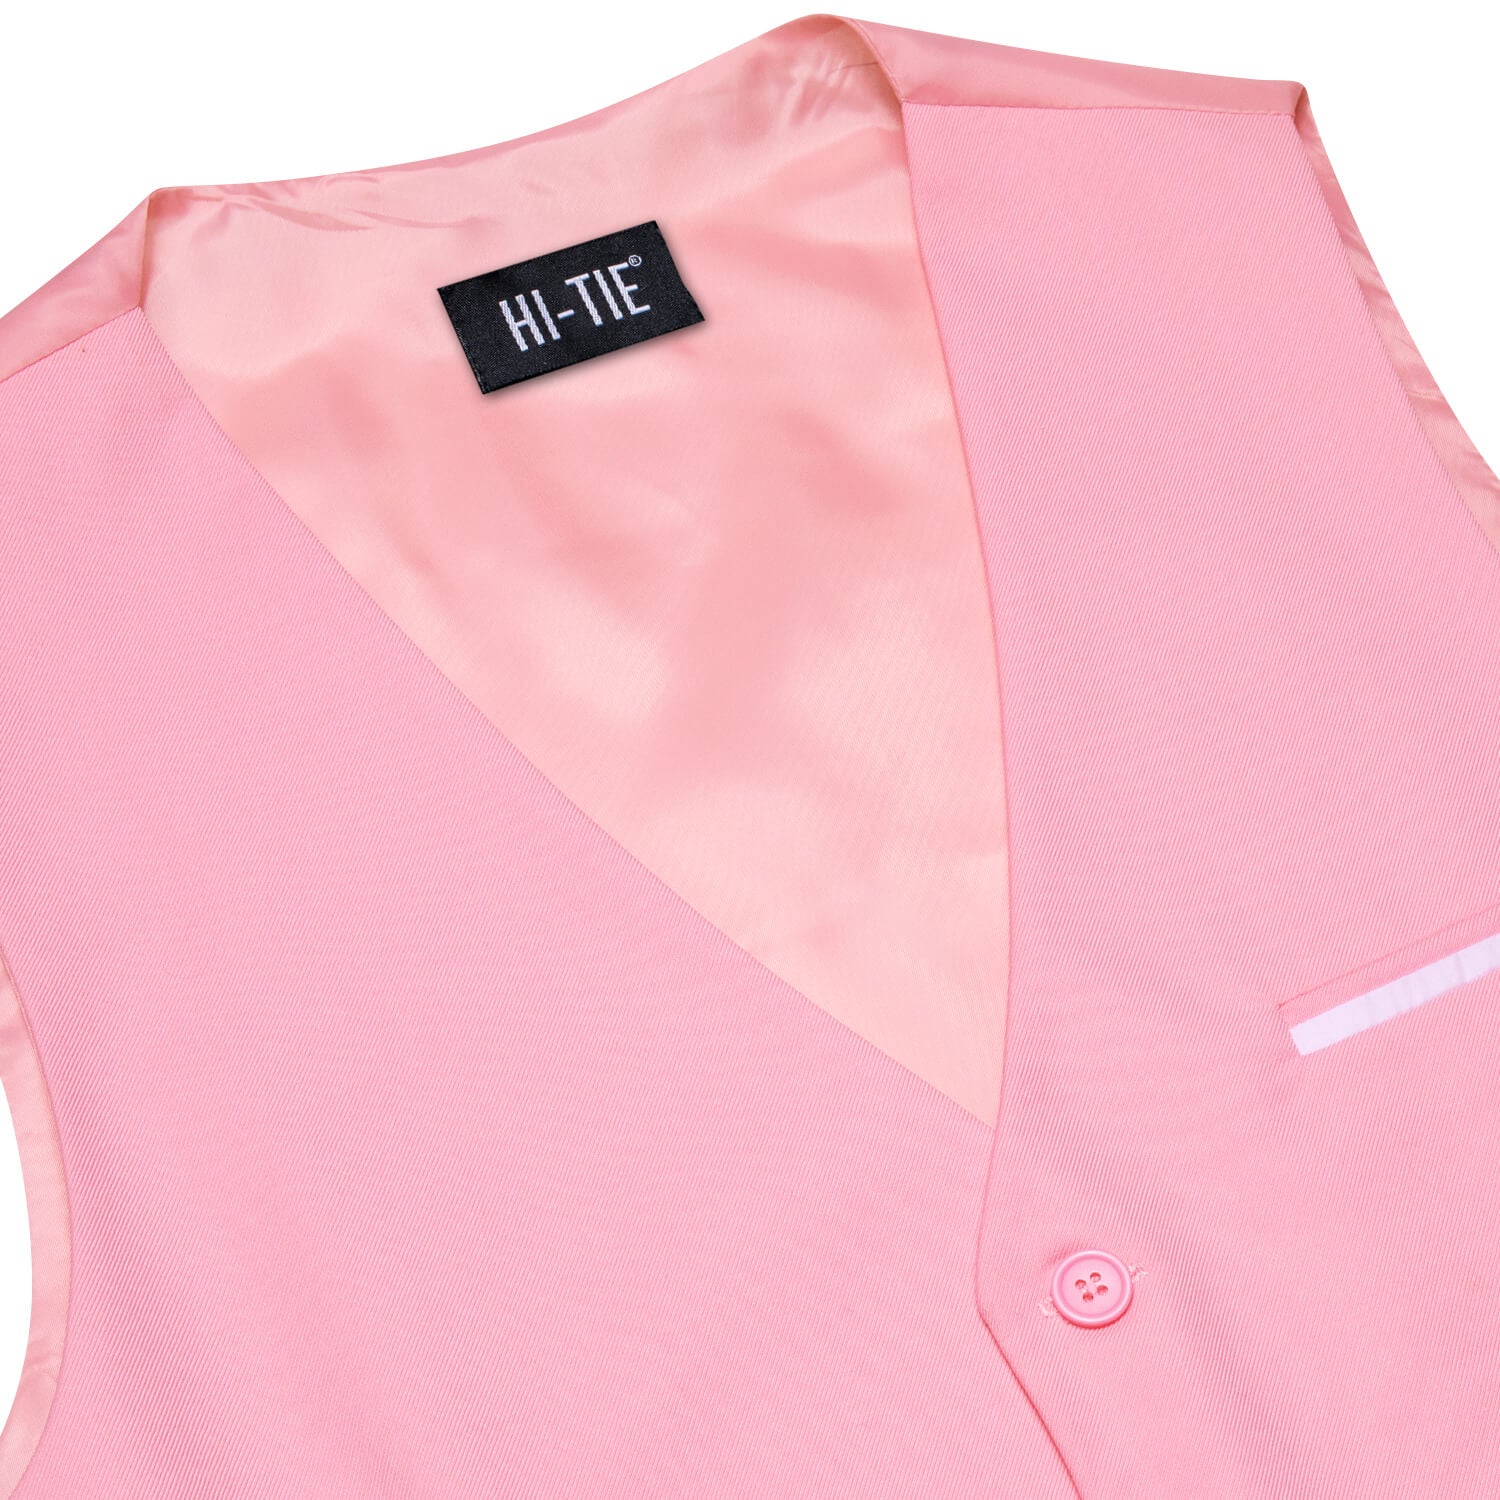 Hi-Tie Vest for Men Light Pink Solid Silk Vest Business Dress Suit Hot